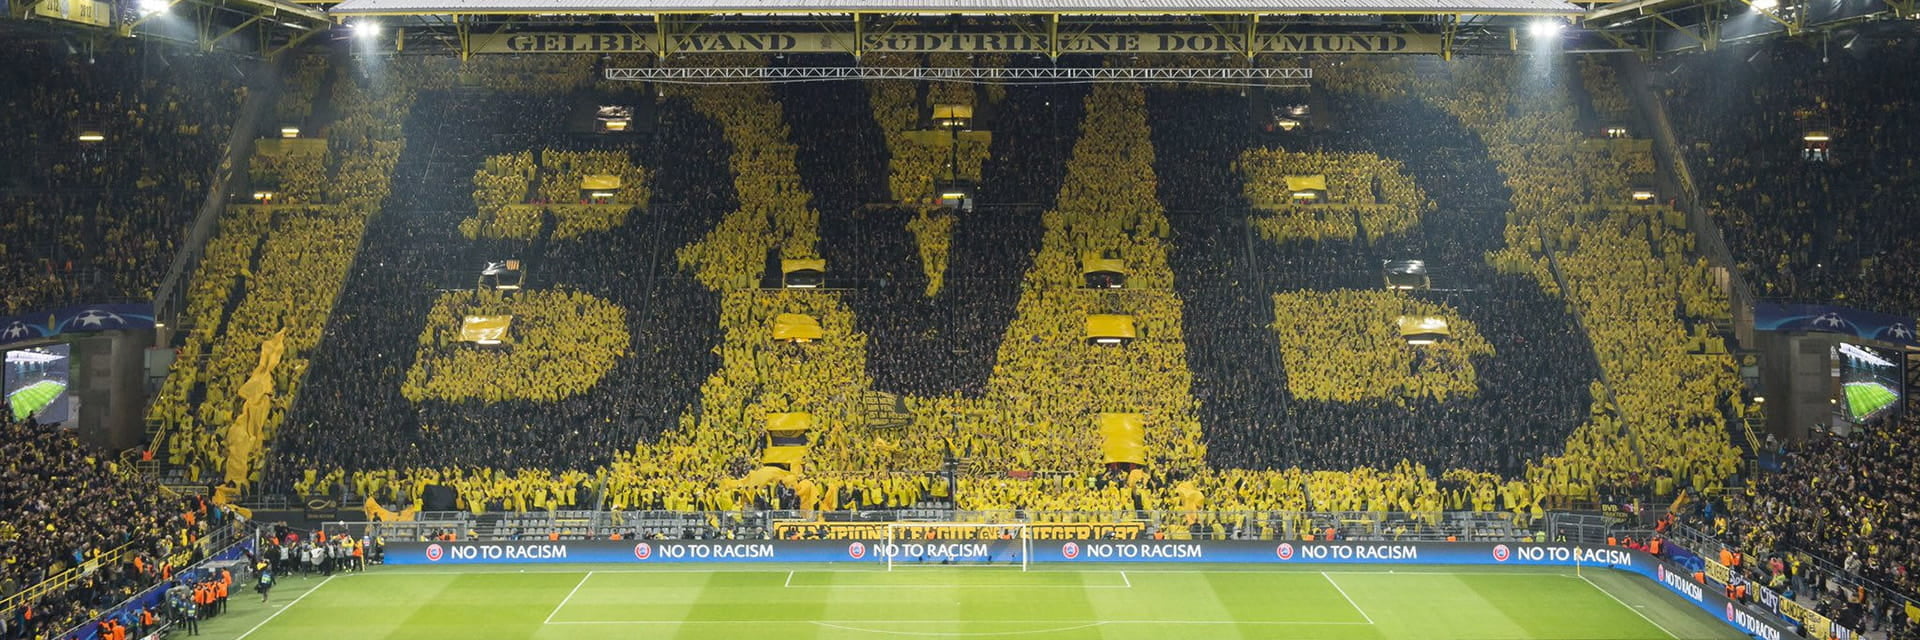 Borussia Dortmund - VfL Bochum, 7 novembrona 15:30